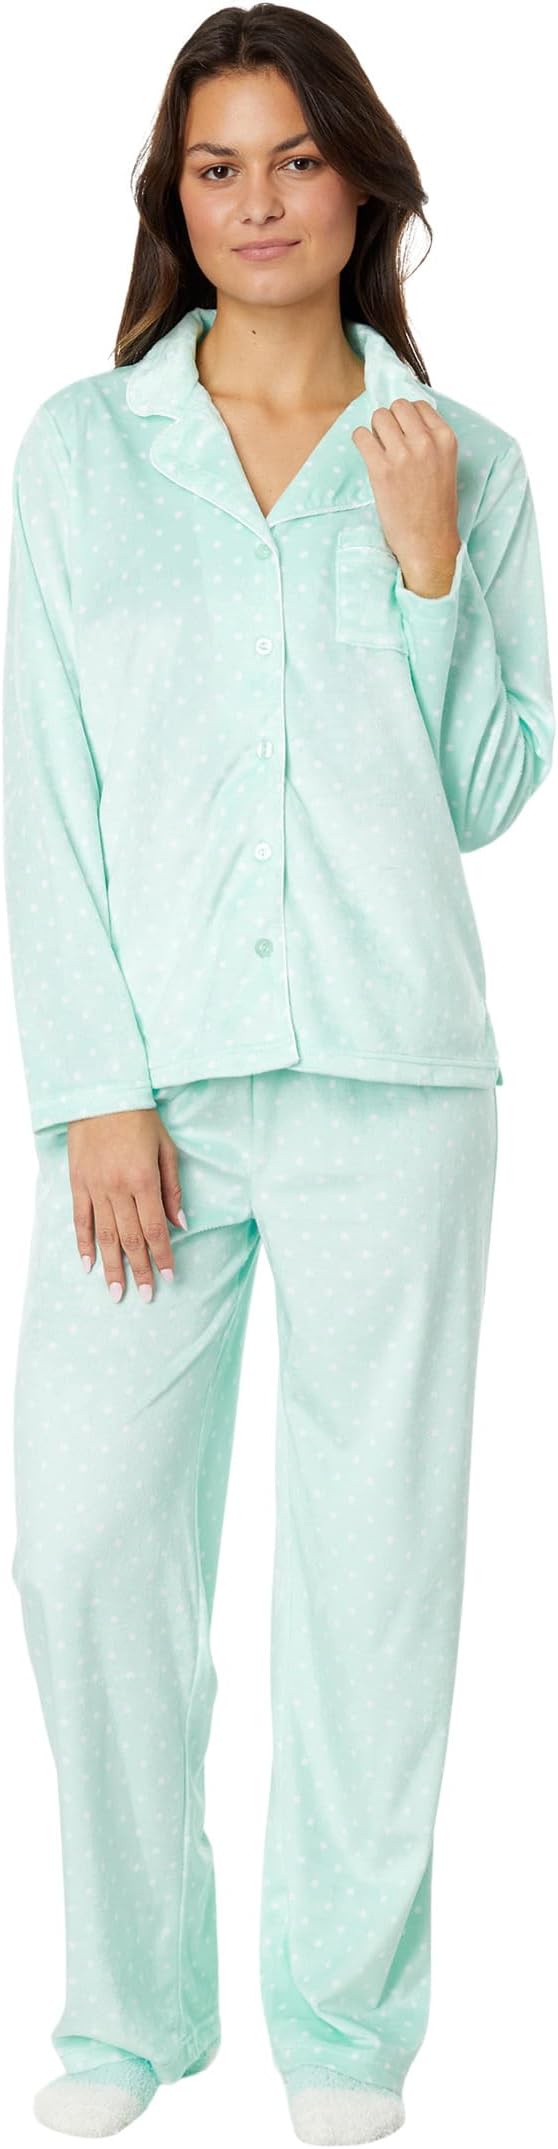 Новинка: флисовый пижамный комплект Minky с длинными рукавами для подруги и носками Karen Neuburger, цвет Mint Pin Dot